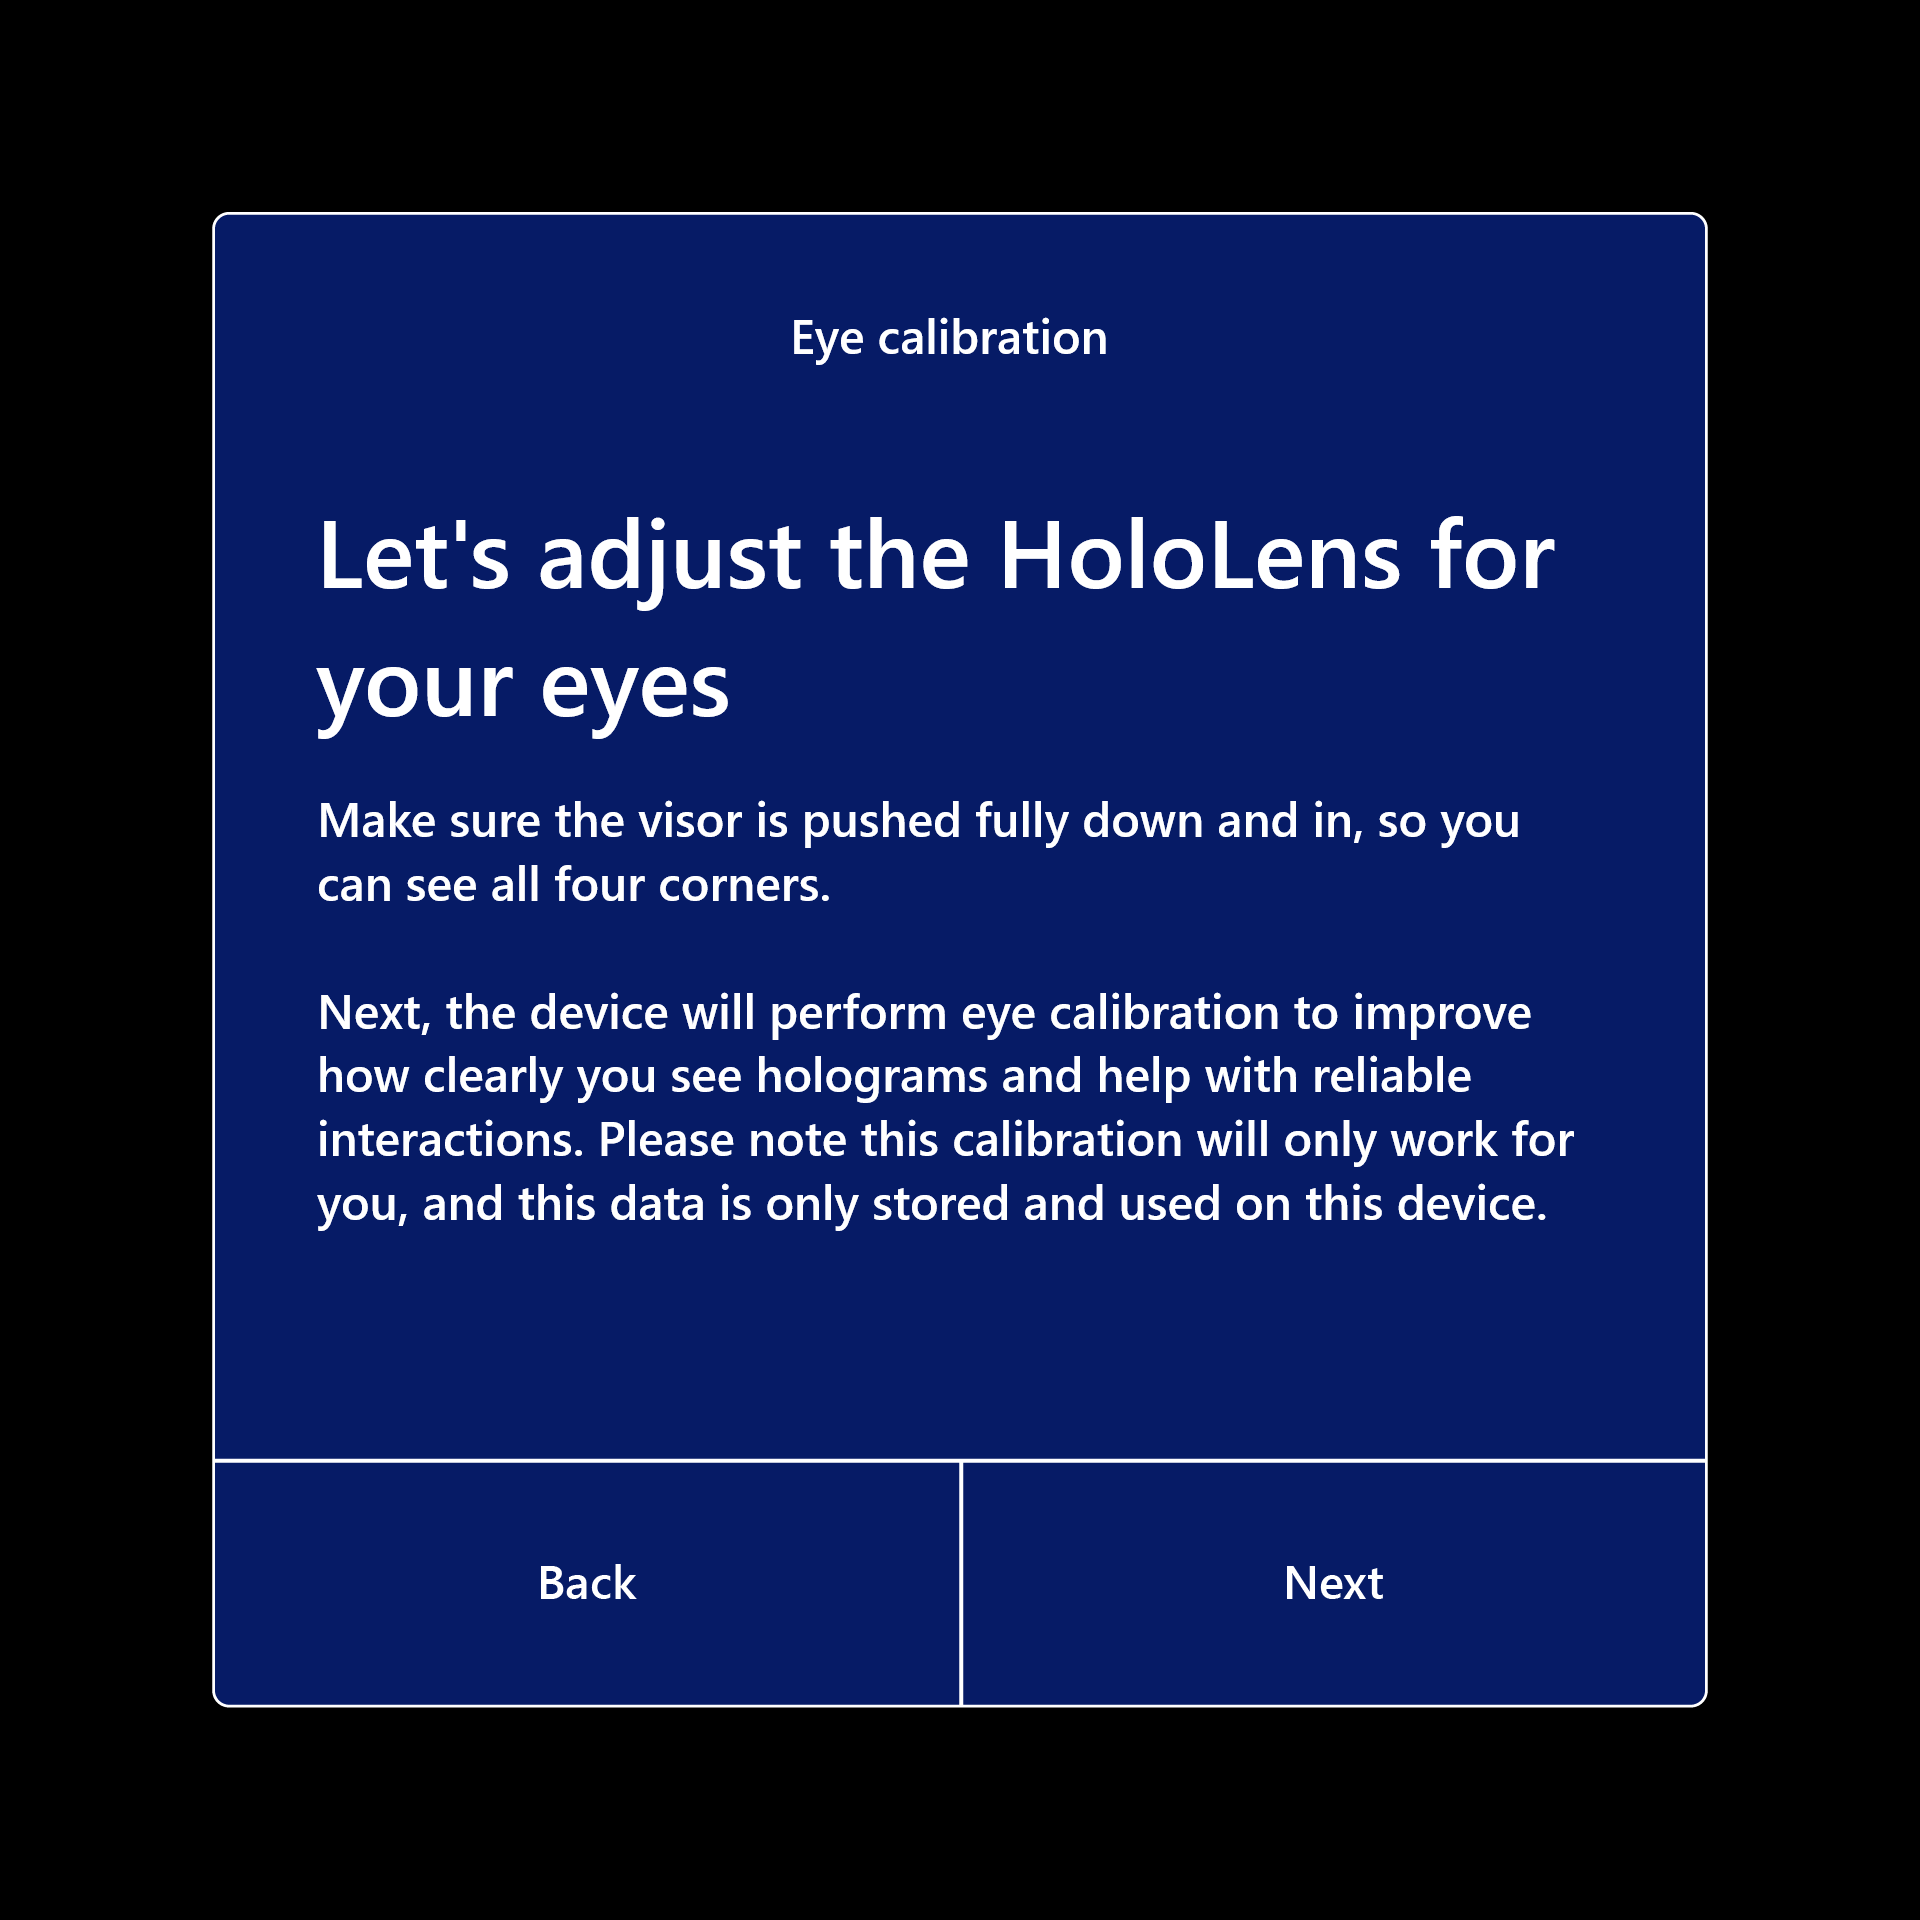 Настройте HoloLens для ваших глаз, чтобы калибровка могла продолжаться.